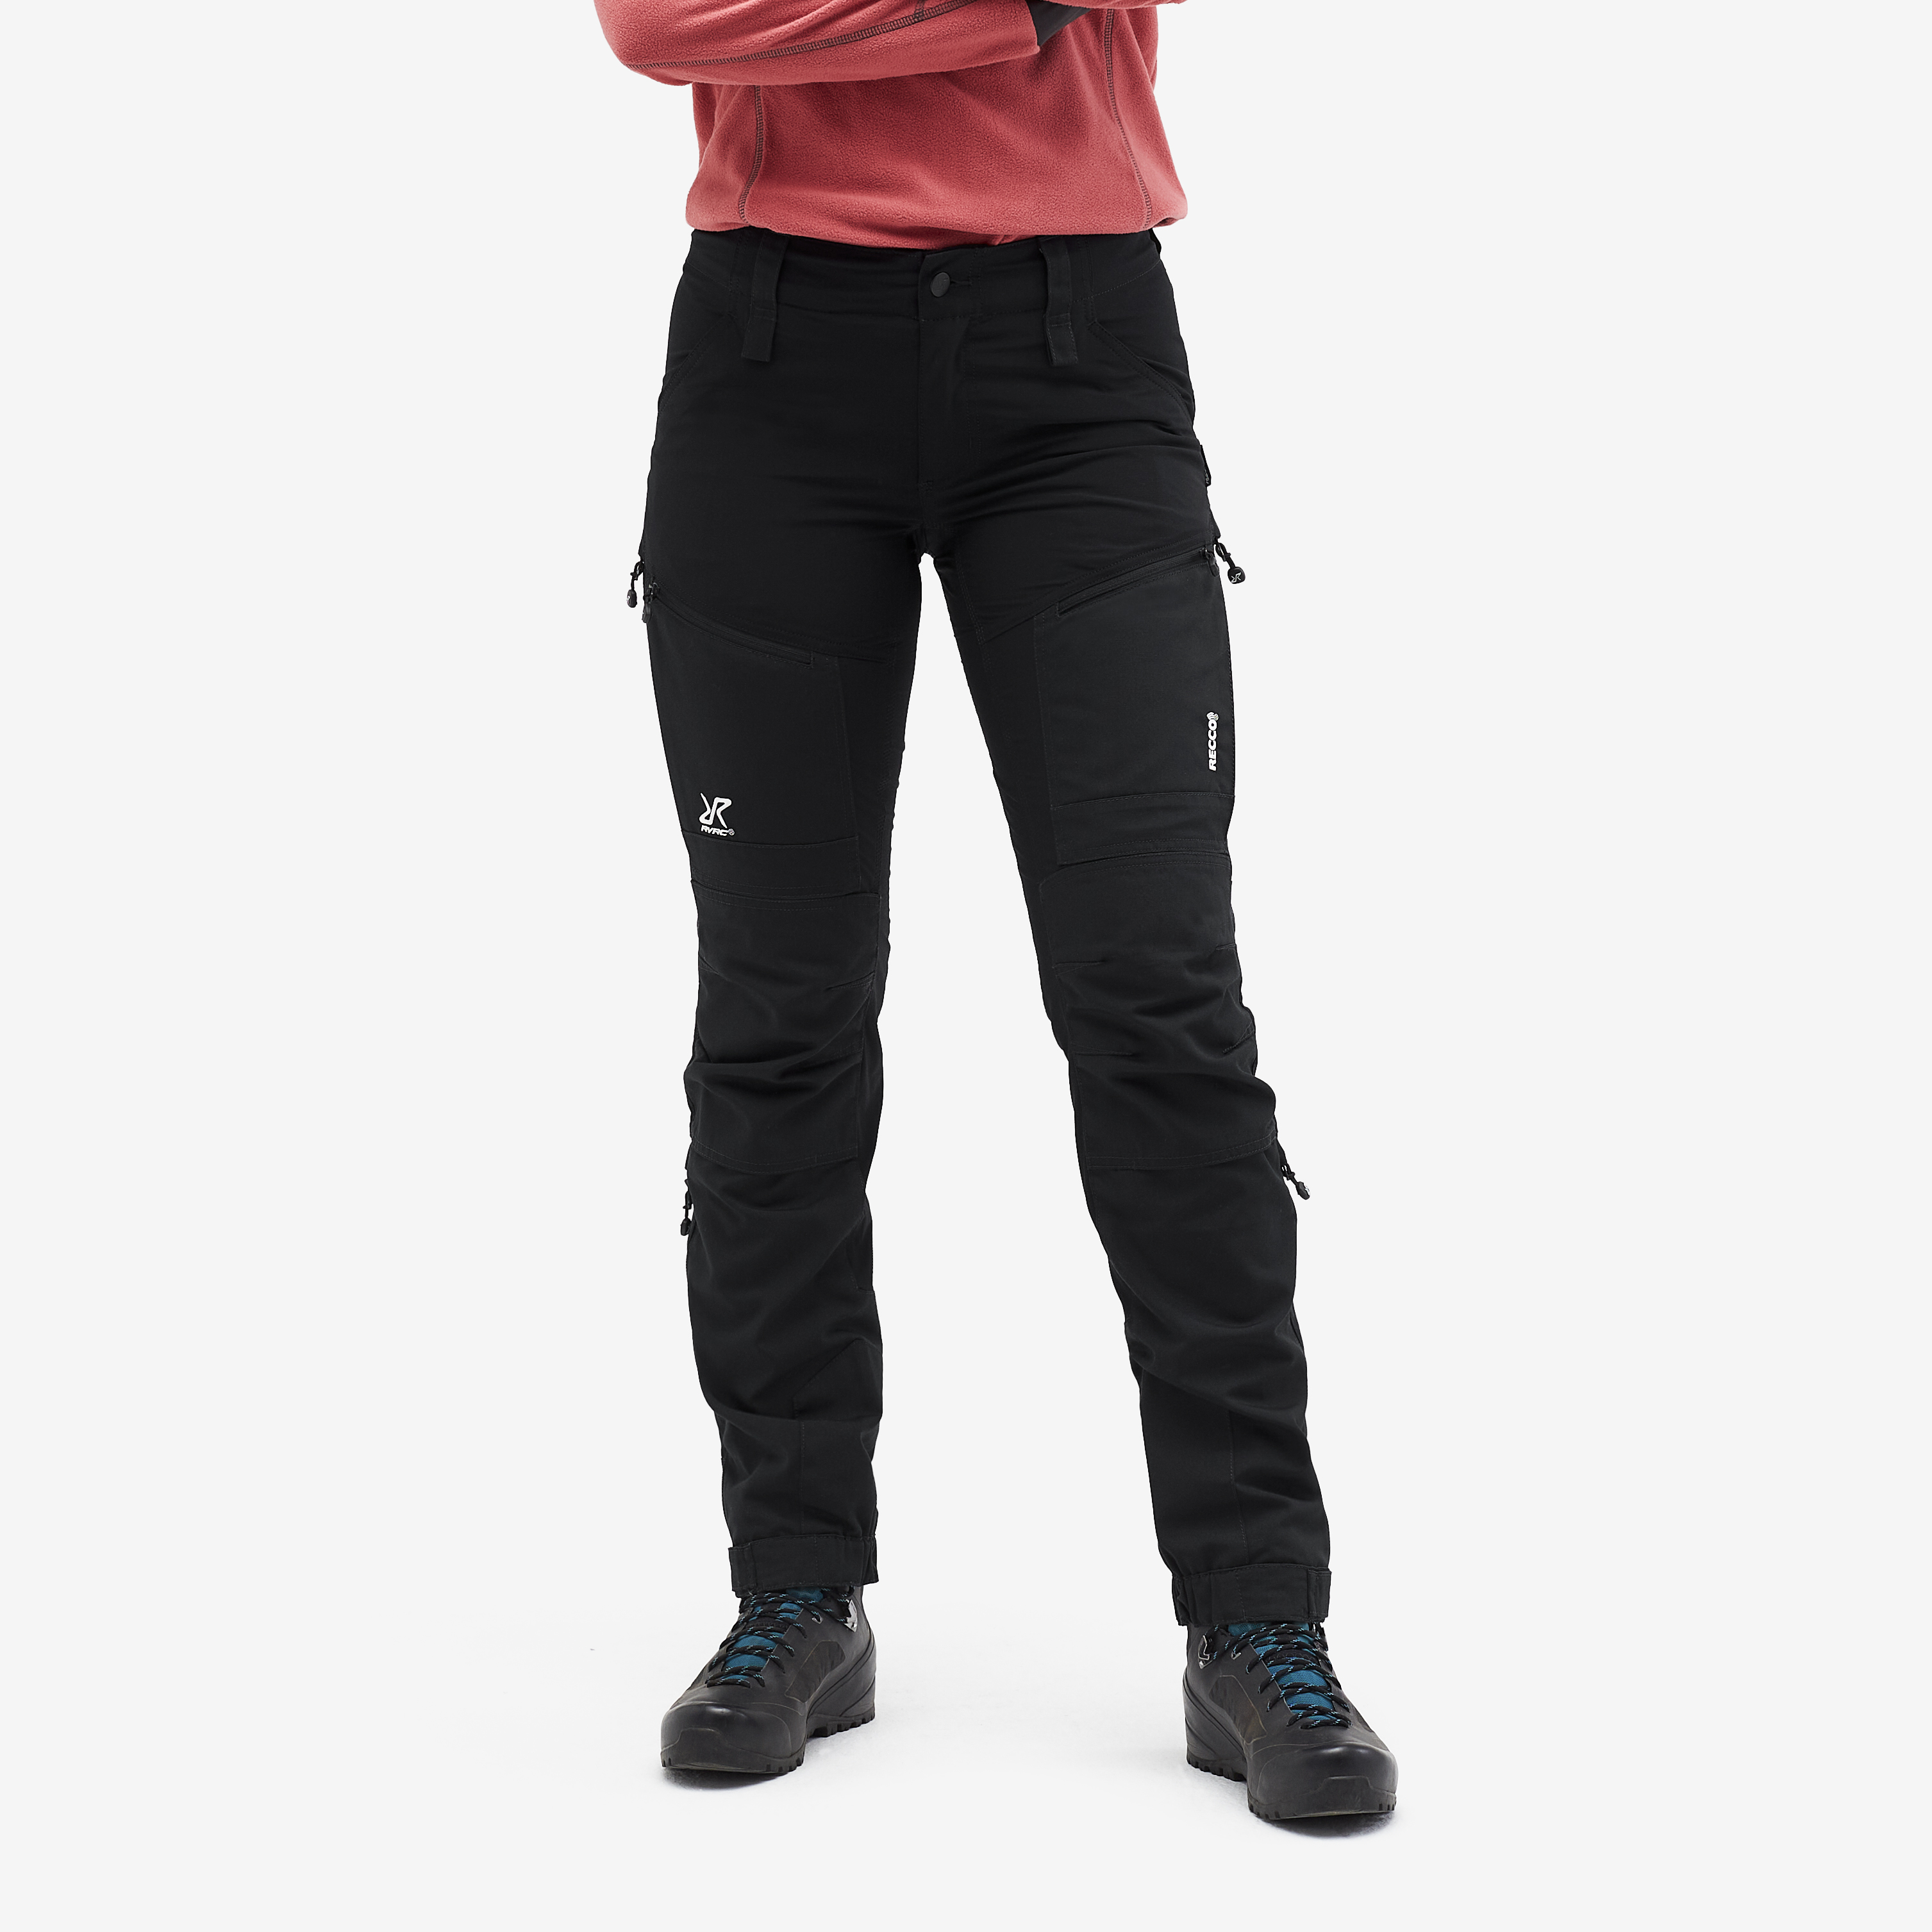 RVRC GP Pro Rescue Pants Black Edition 2.0 Femme